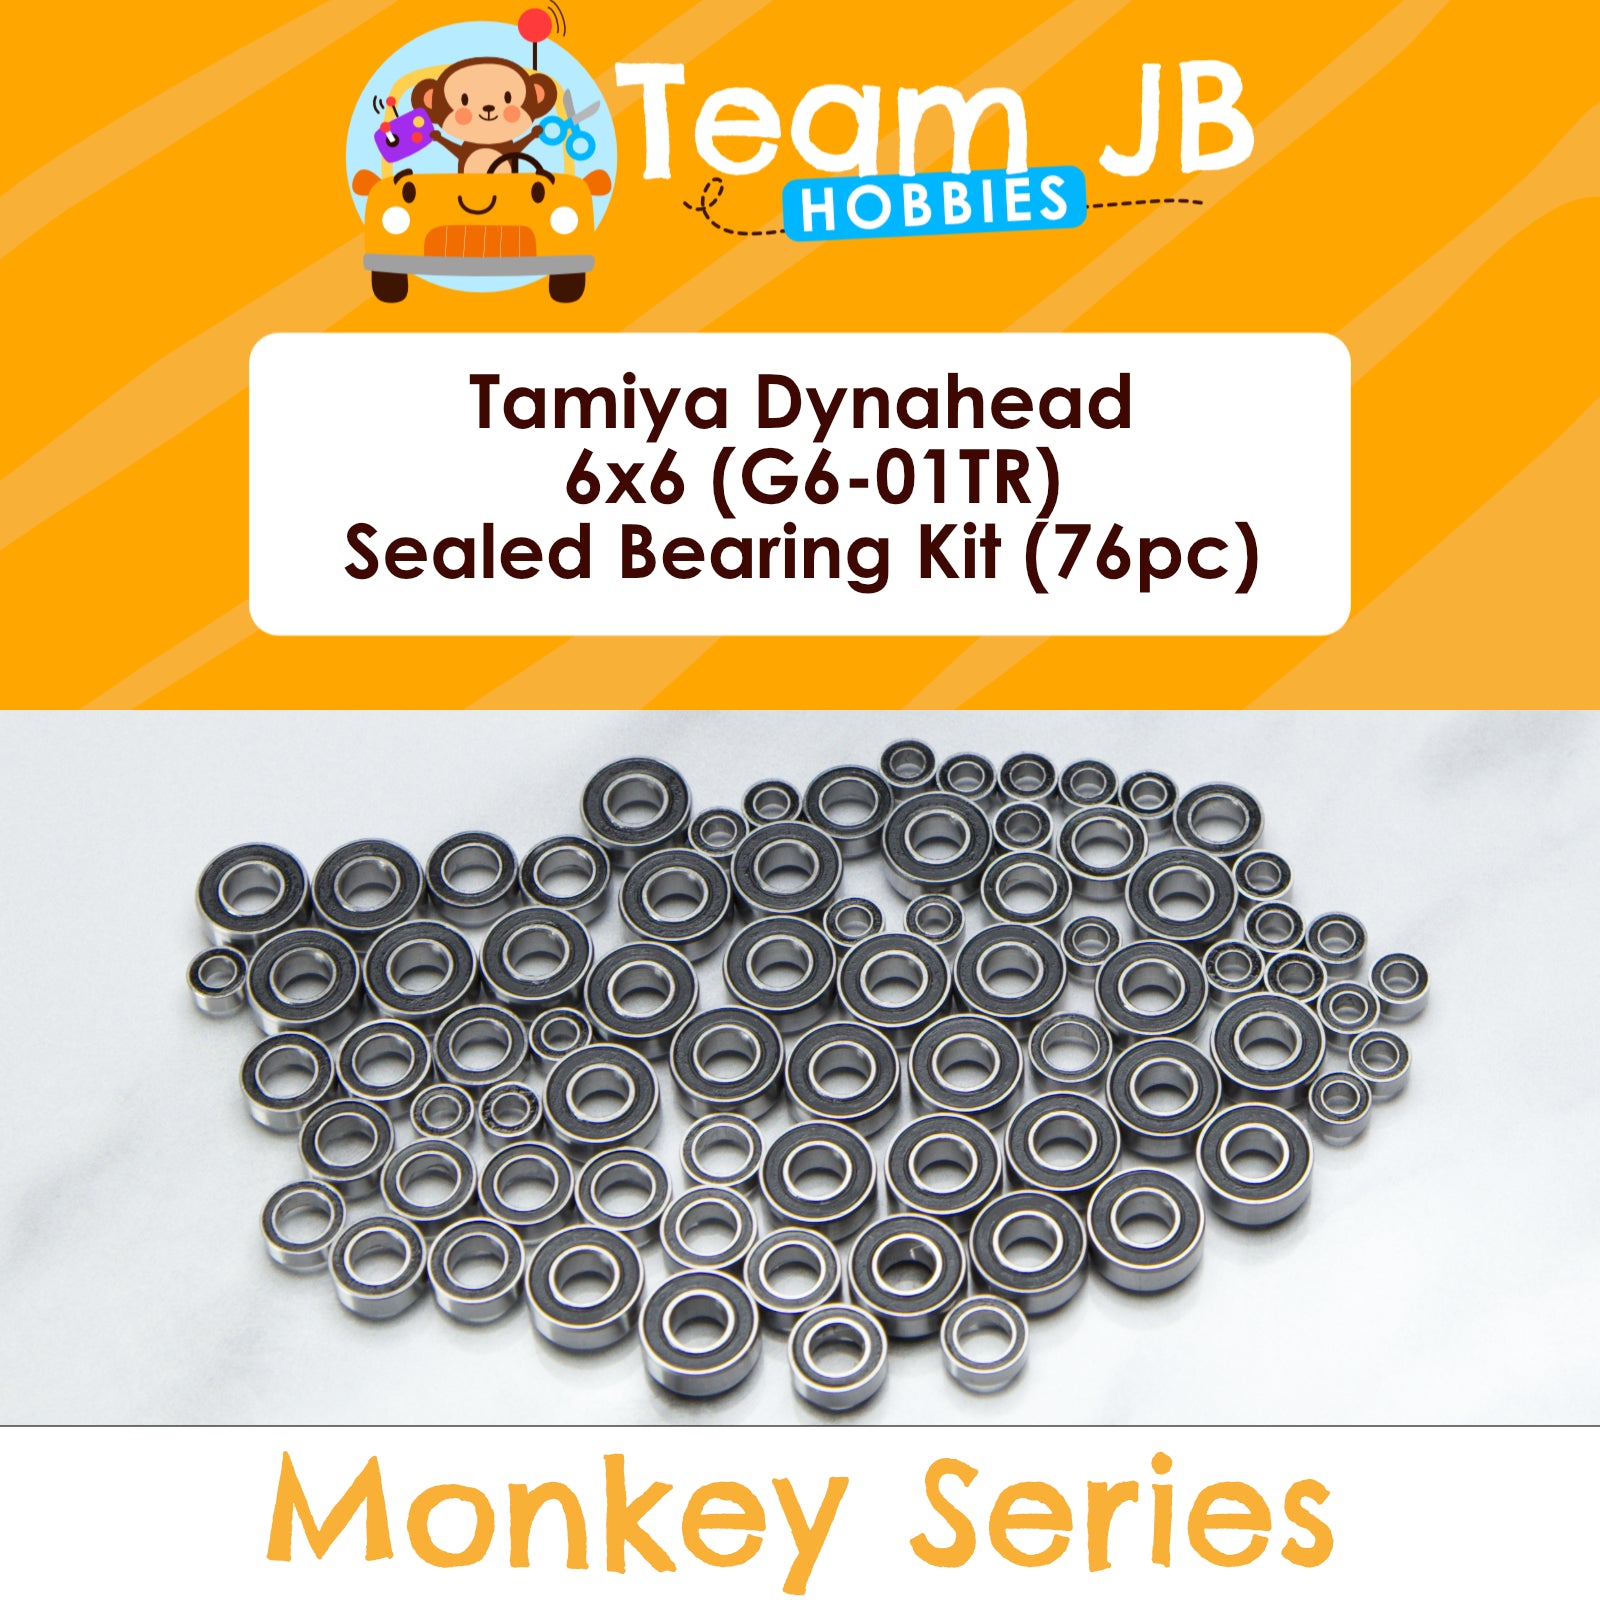 Tamiya Dynahead 6x6 (G6-01TR) - Includes 4 Wheel Steering bearings - Sealed Bearing Kit